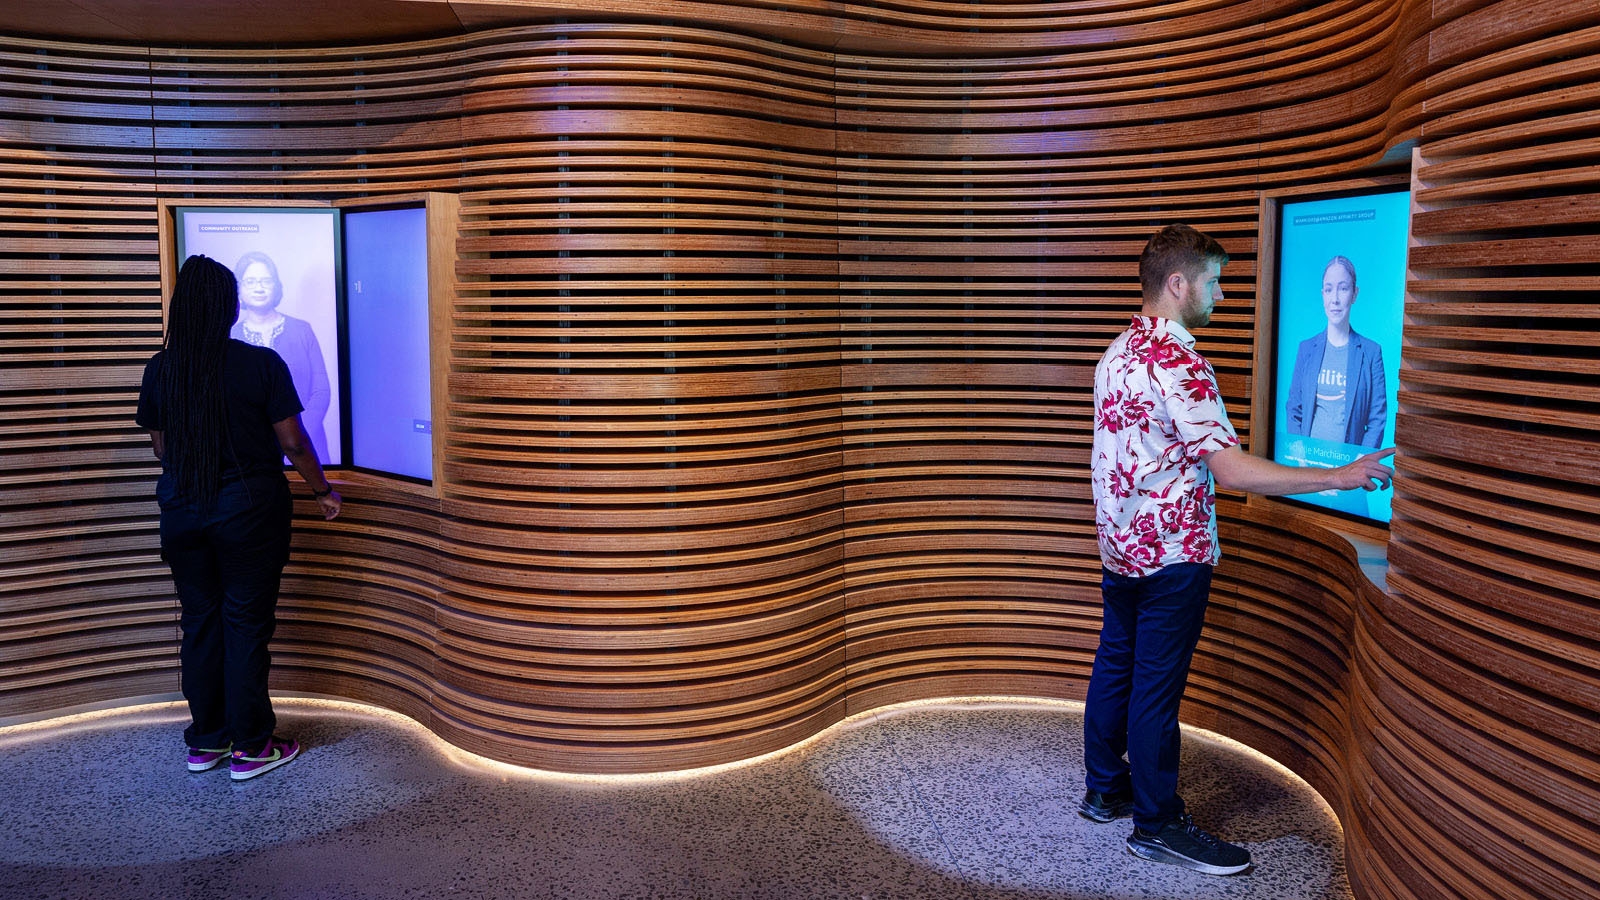 Amazon's HQ2 interactive visitor center.